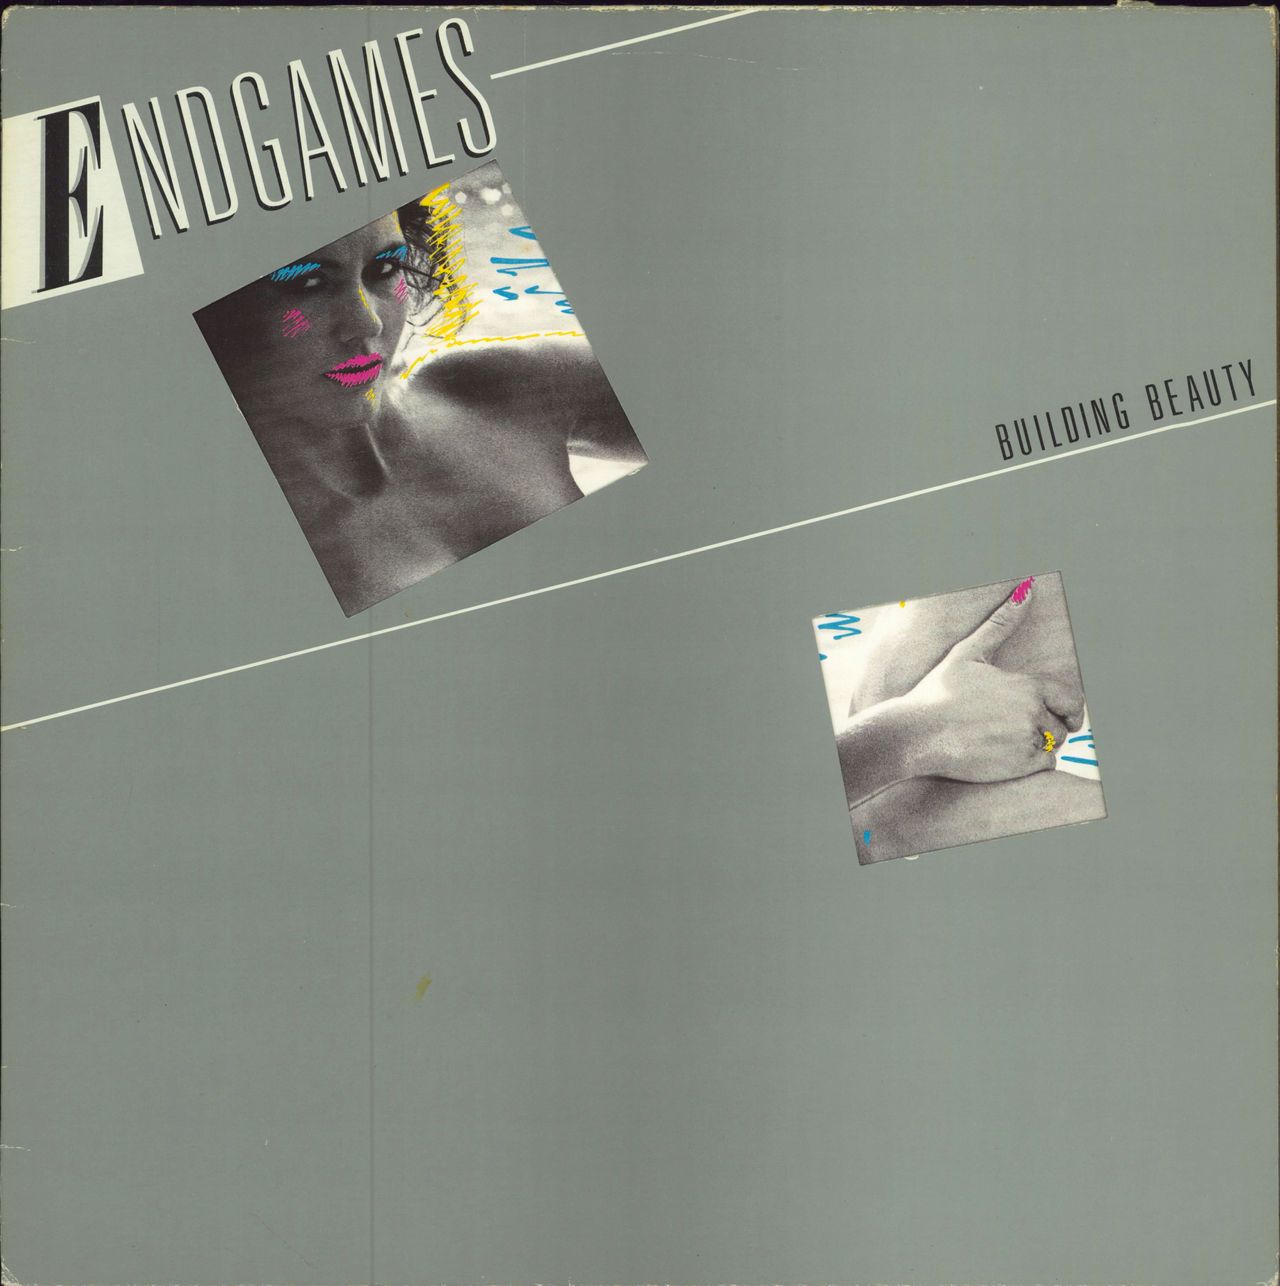 Endgames Building Beauty UK vinyl LP album (LP record) V2287